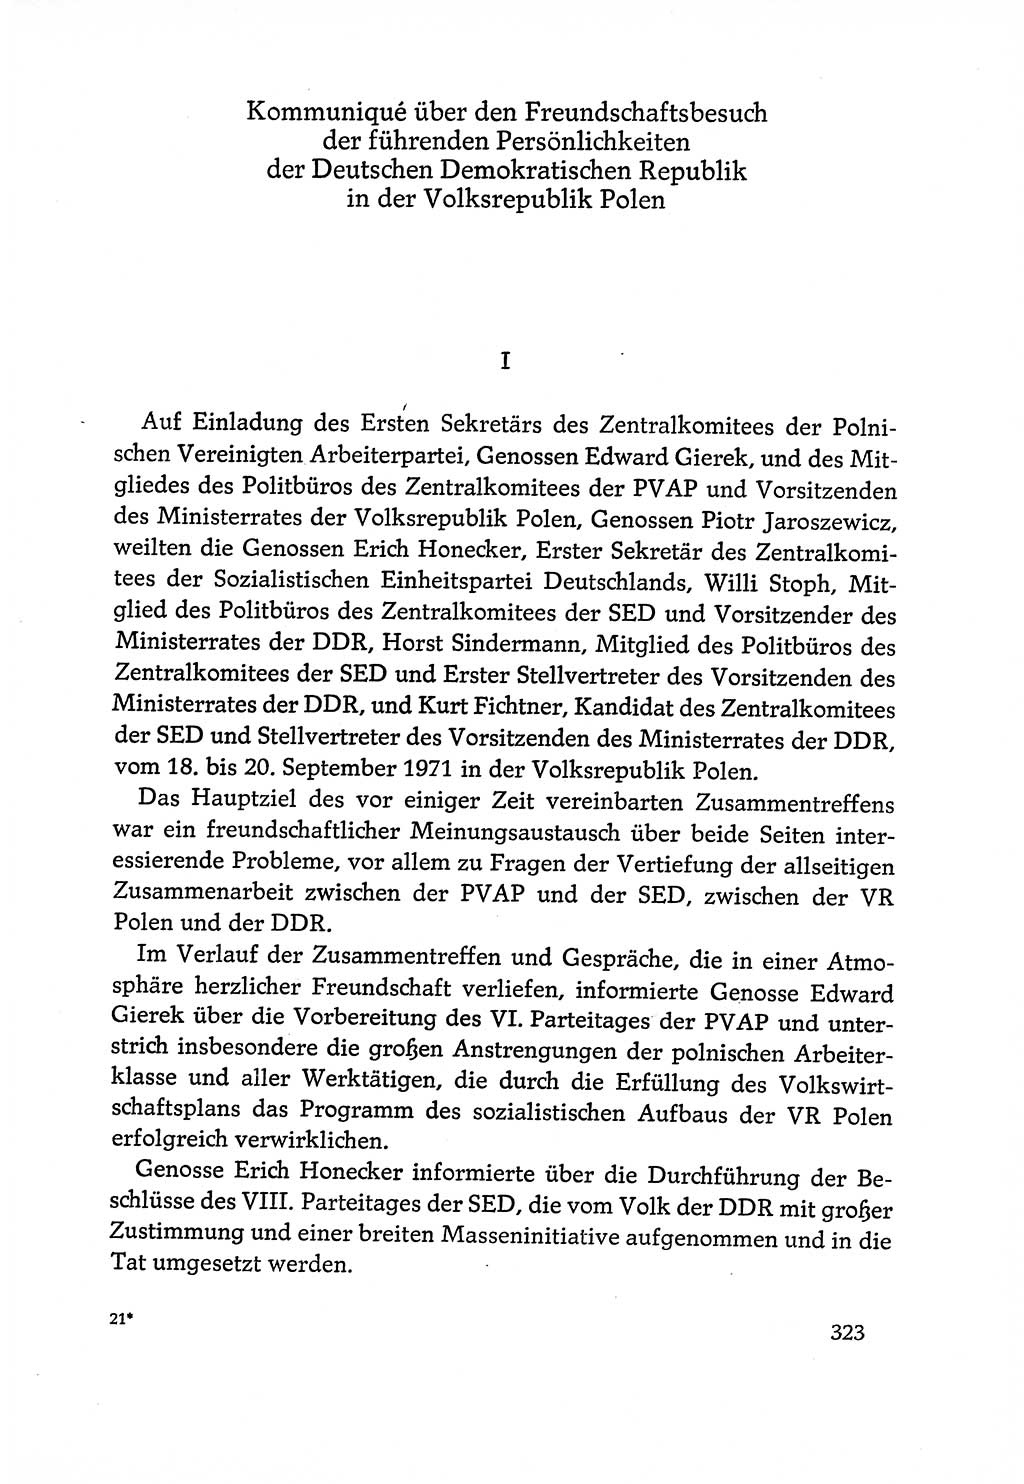 Dokumente der Sozialistischen Einheitspartei Deutschlands (SED) [Deutsche Demokratische Republik (DDR)] 1970-1971, Seite 323 (Dok. SED DDR 1970-1971, S. 323)